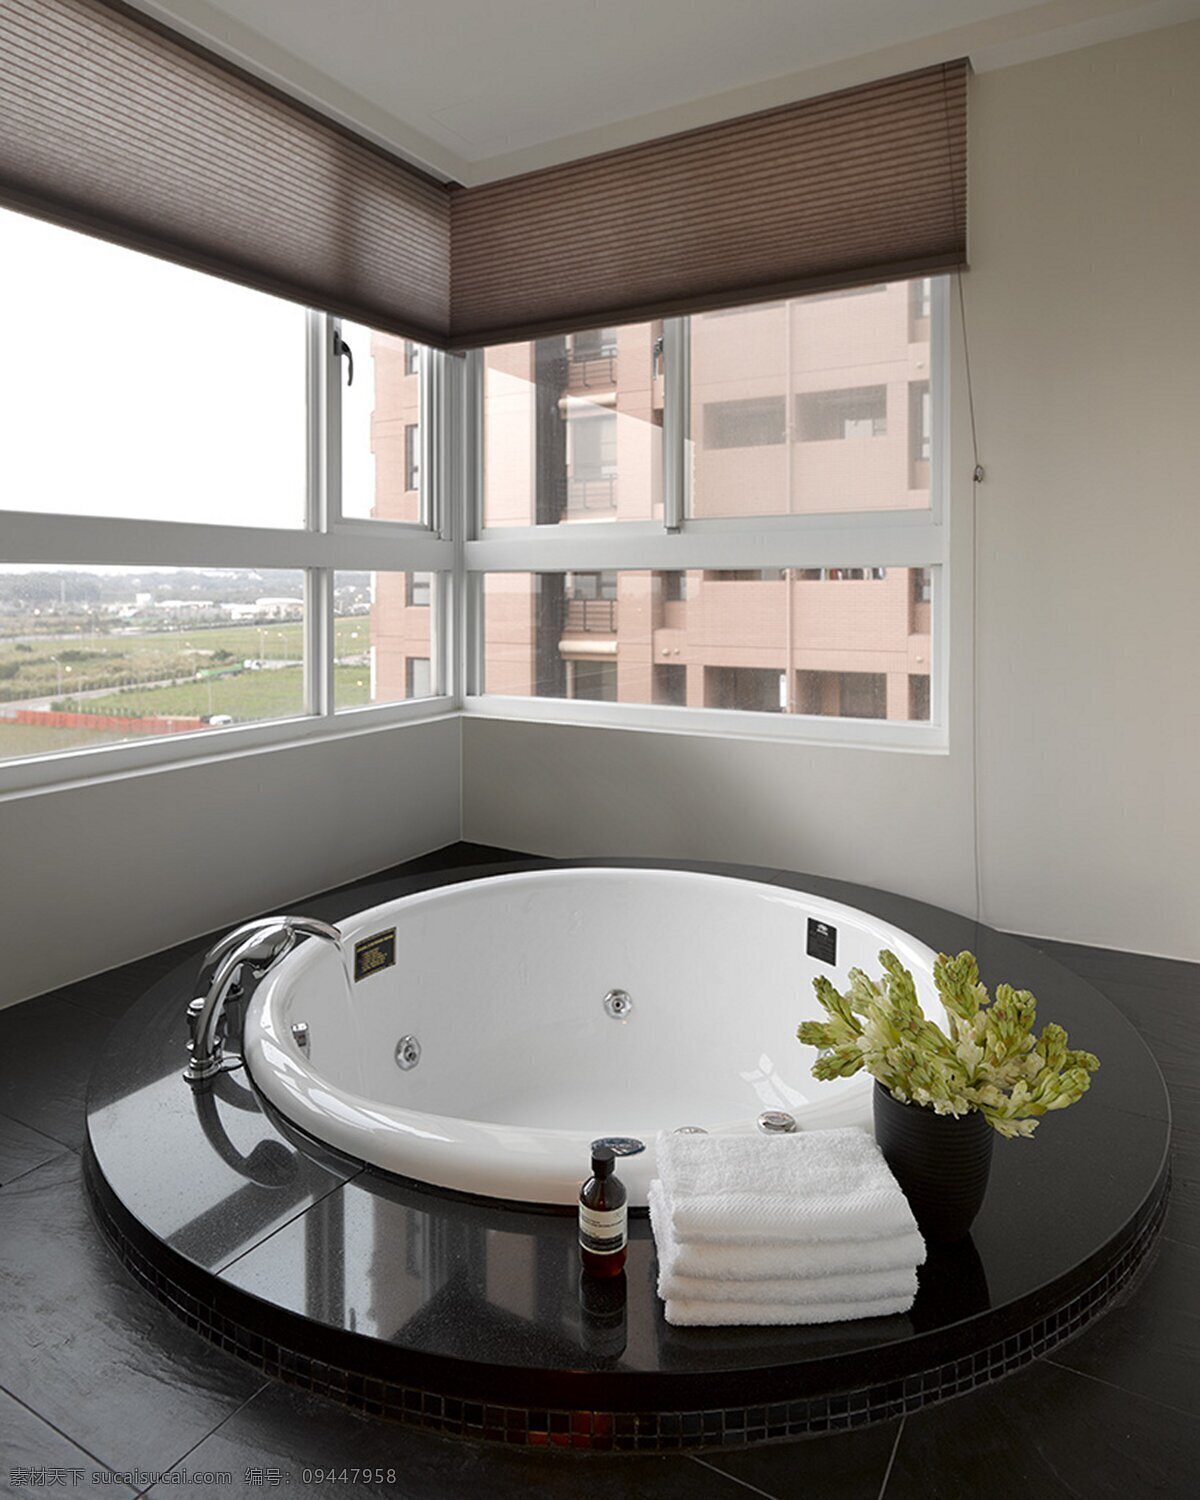 简约 风 室内设计 露天 浴室 效果图 现代 露天浴缸 圆形浴缸 现代简约风 家装